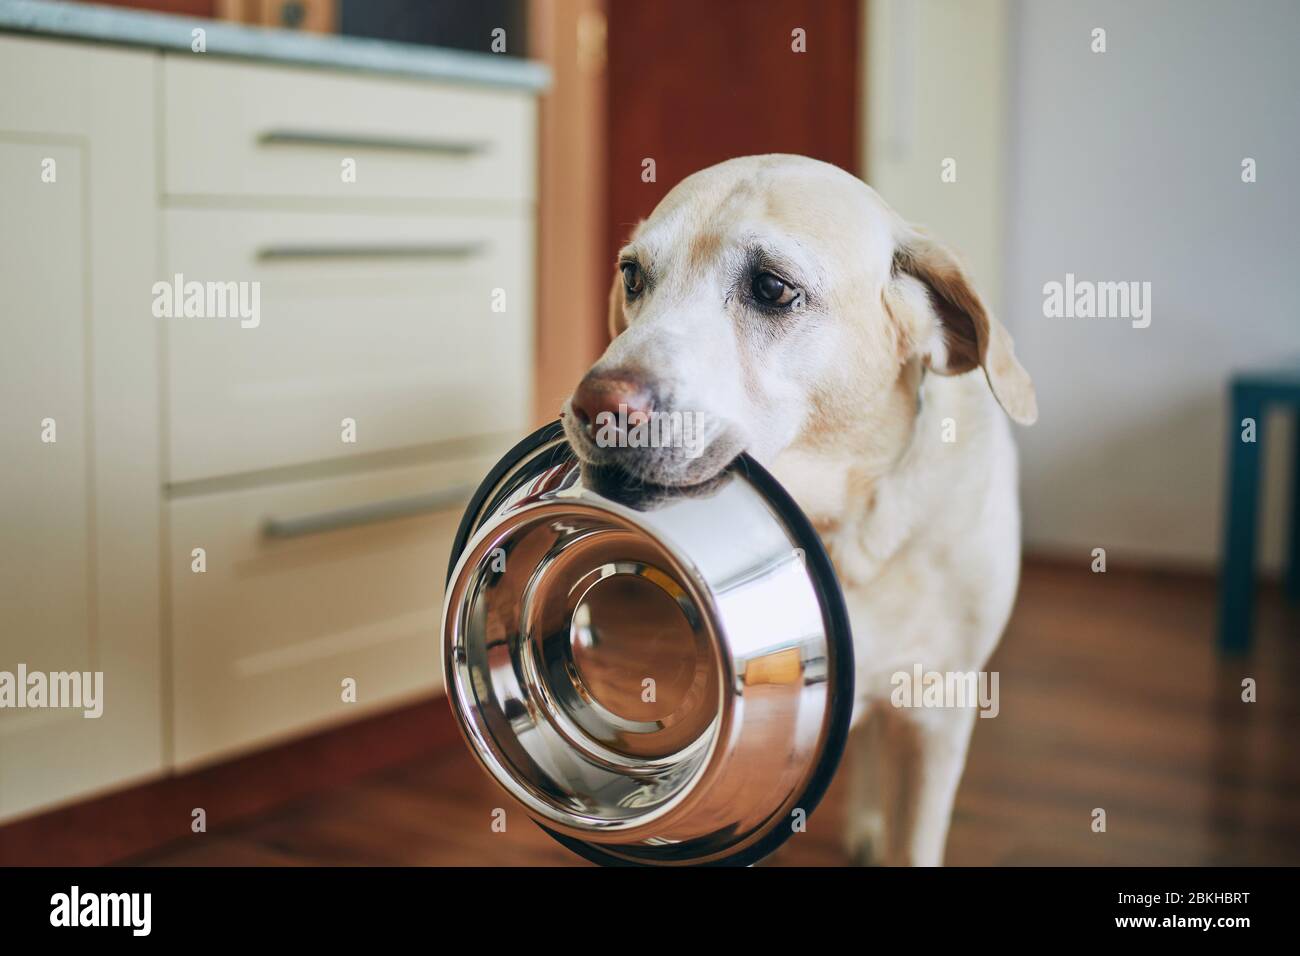 Hungriger Hund mit traurigen Augen wartet auf die Fütterung in der Hausküche. Der niedliche Labrador Retriever hält Hundeschüssel im Mund. Stockfoto